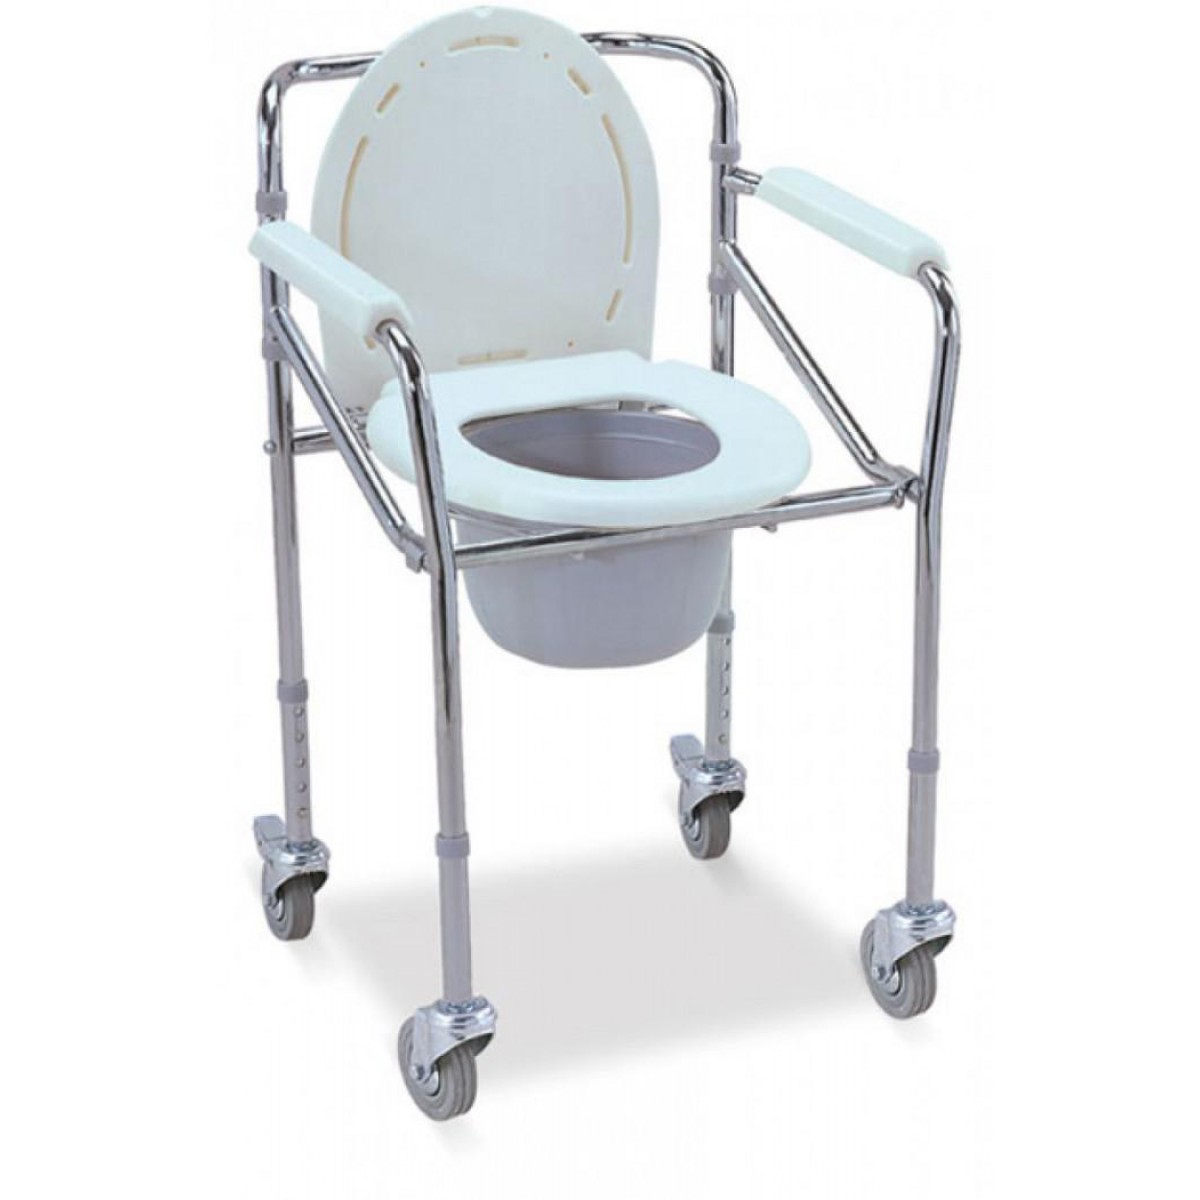 Туалет для инвалидов цена. Кресло туалет Тривес са 616. Кресло-туалет trives ca668. Кресло-туалет kjt708. Кресло-туалет для инвалидов Amrus amcb6803.